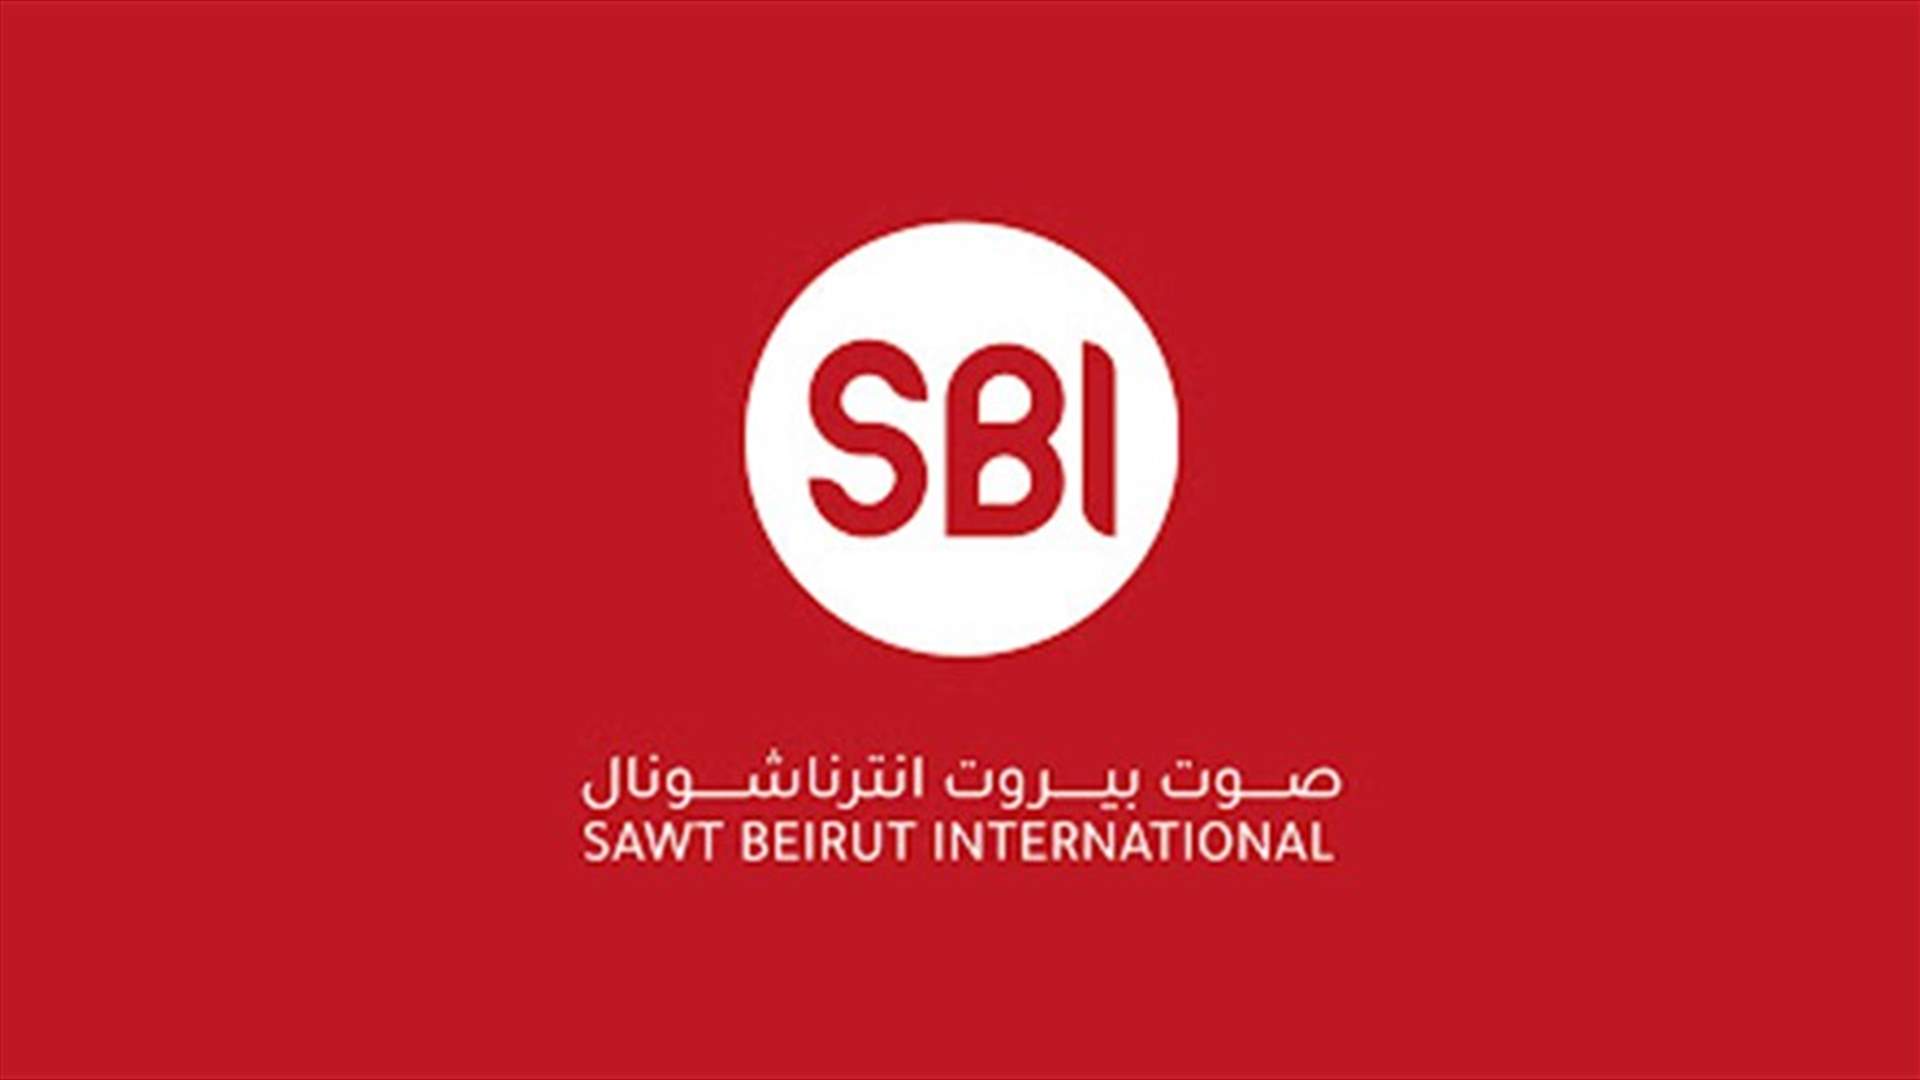 فوز الـSBI بحقوق النقل الرسمي المباشر لبطولة لبنان لكرة السلة للمواسم الثلاثة المقبلة